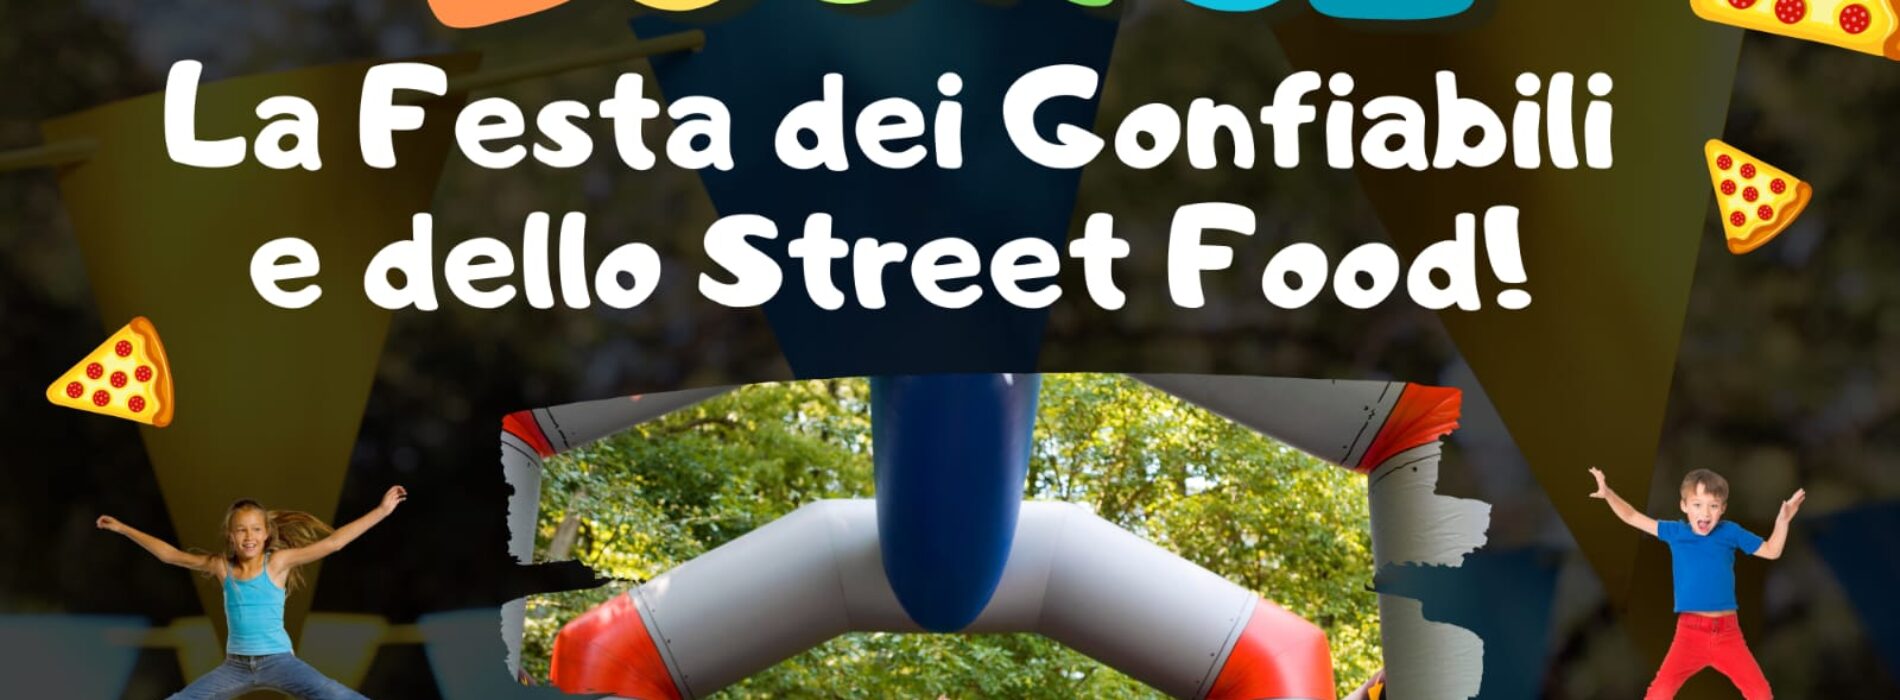 CeGusto Bounce, festival dei gonfiabili e dello street food